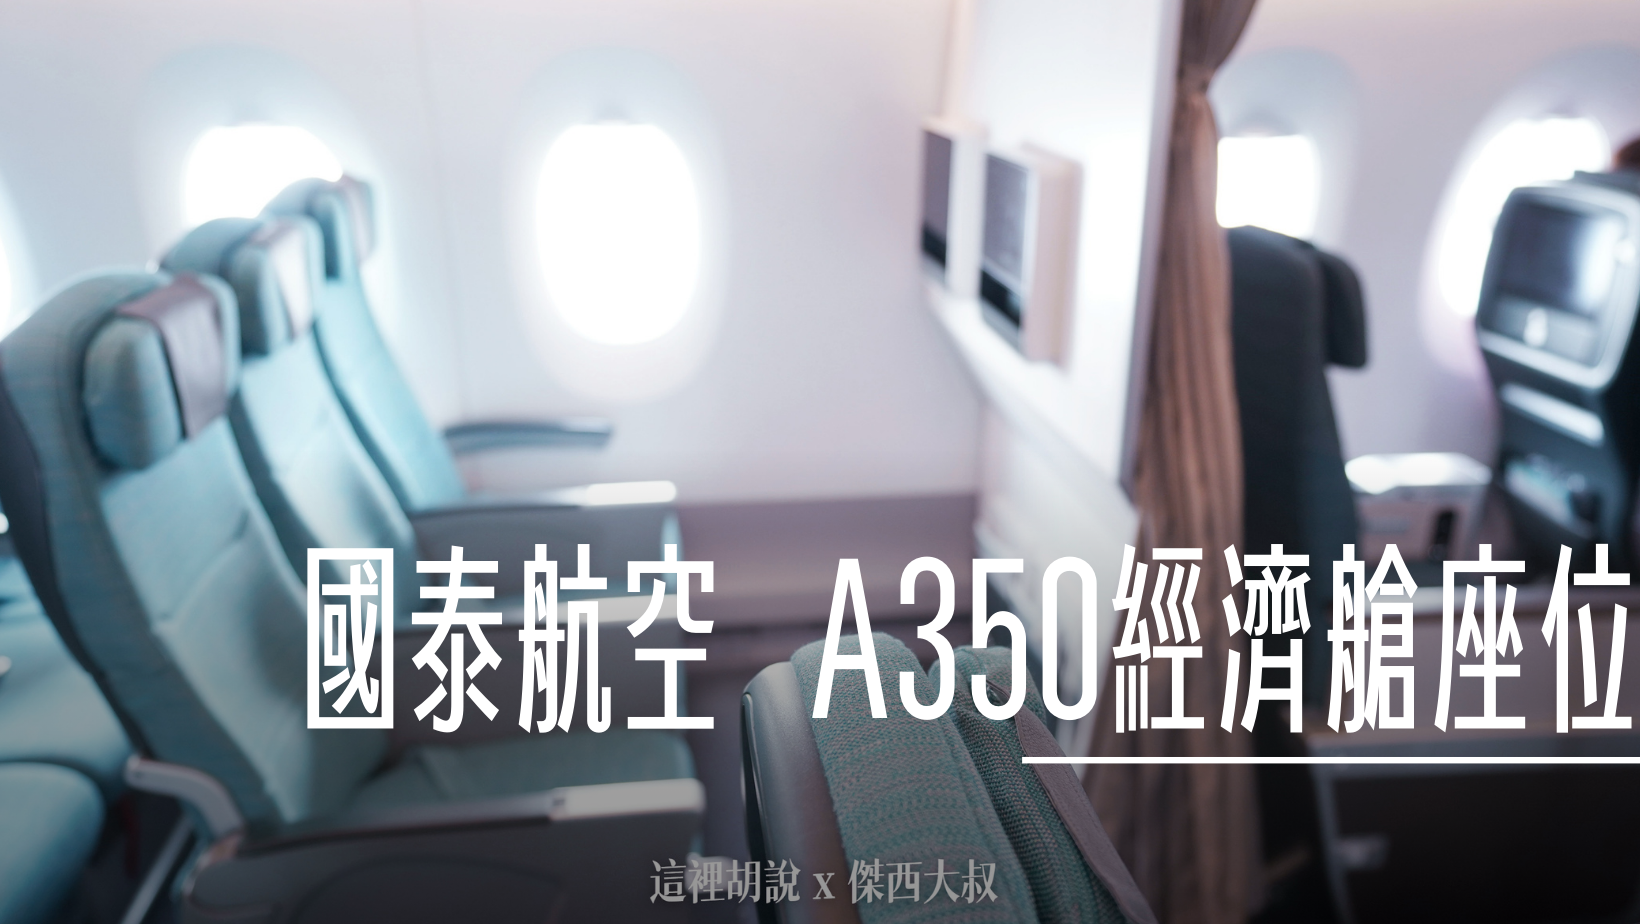 長榮航空 松山羽田航班機種放大787-10首航